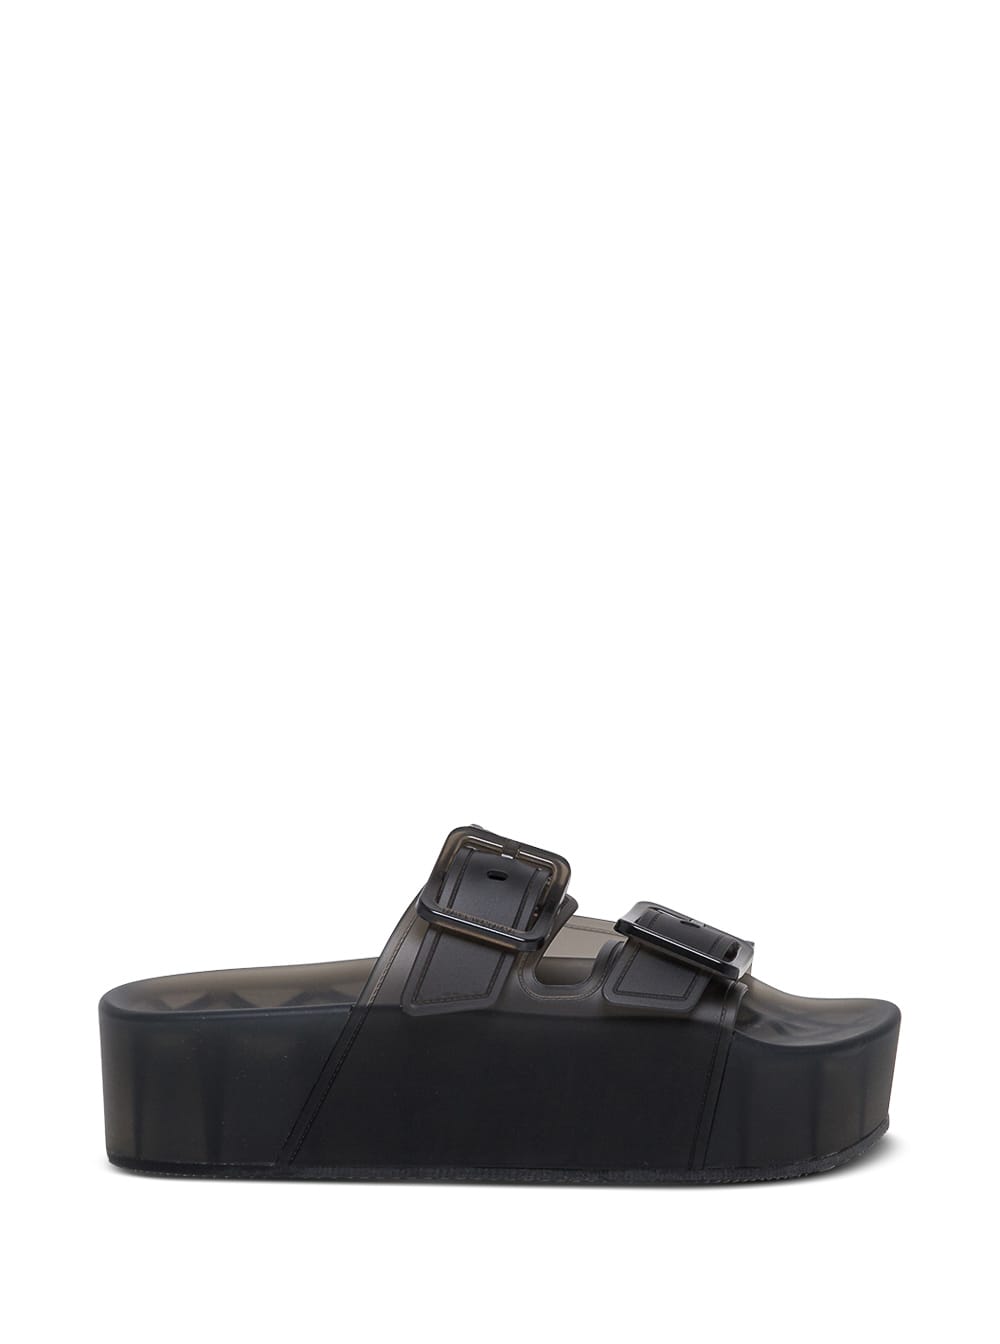 Balenciaga Mallorca Black Rubber Sandals With Platform